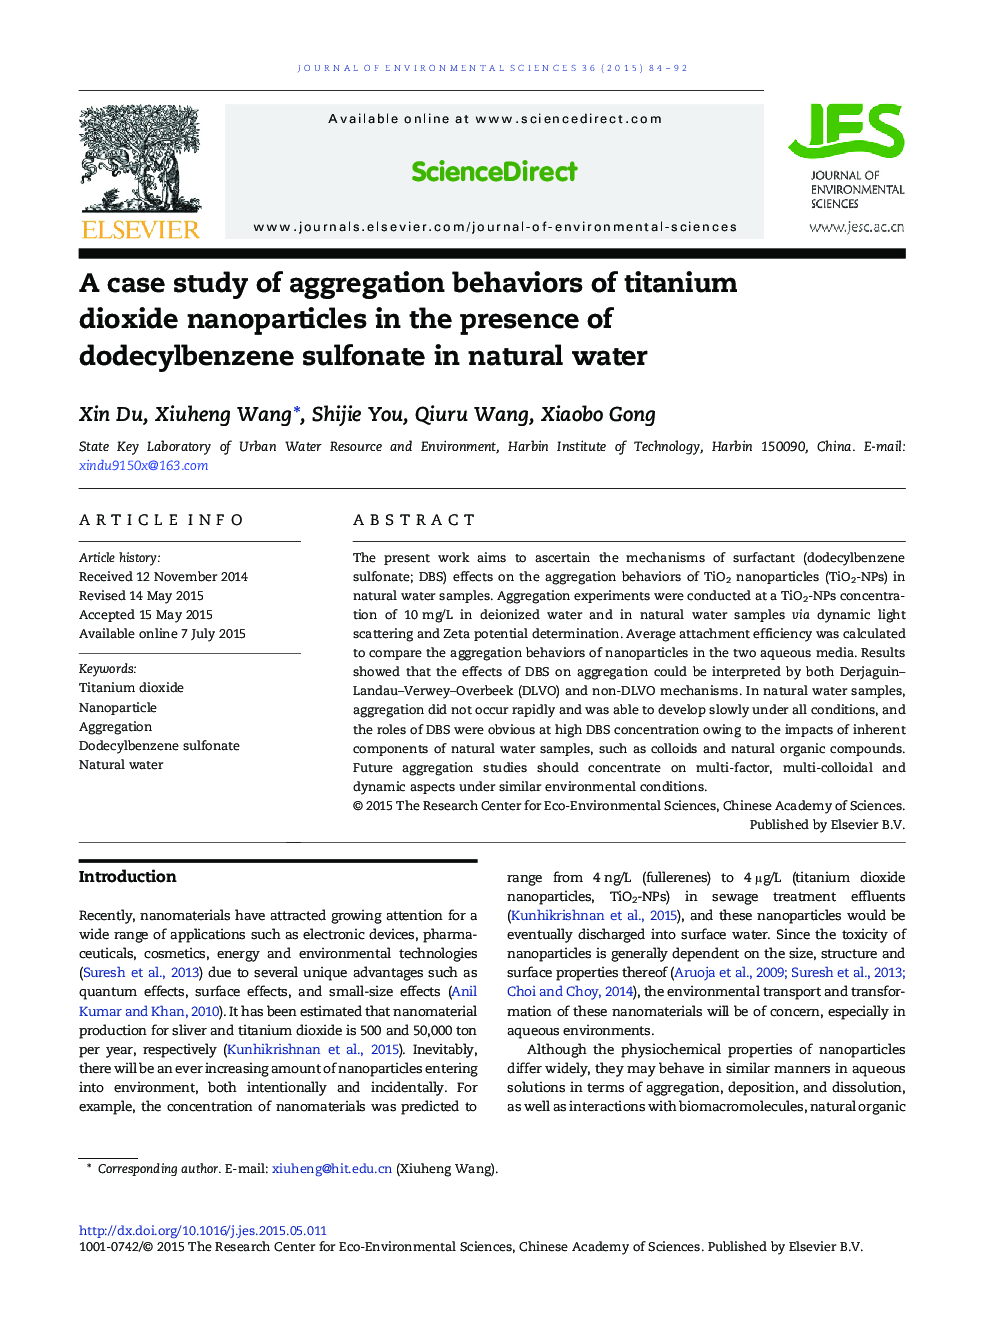 مطالعه موردی رفتارهای تجمعی نانوذرات دی اکسید تیتانیوم در حضور دودسیبل بنزن سولفونات در آبهای طبیعی 